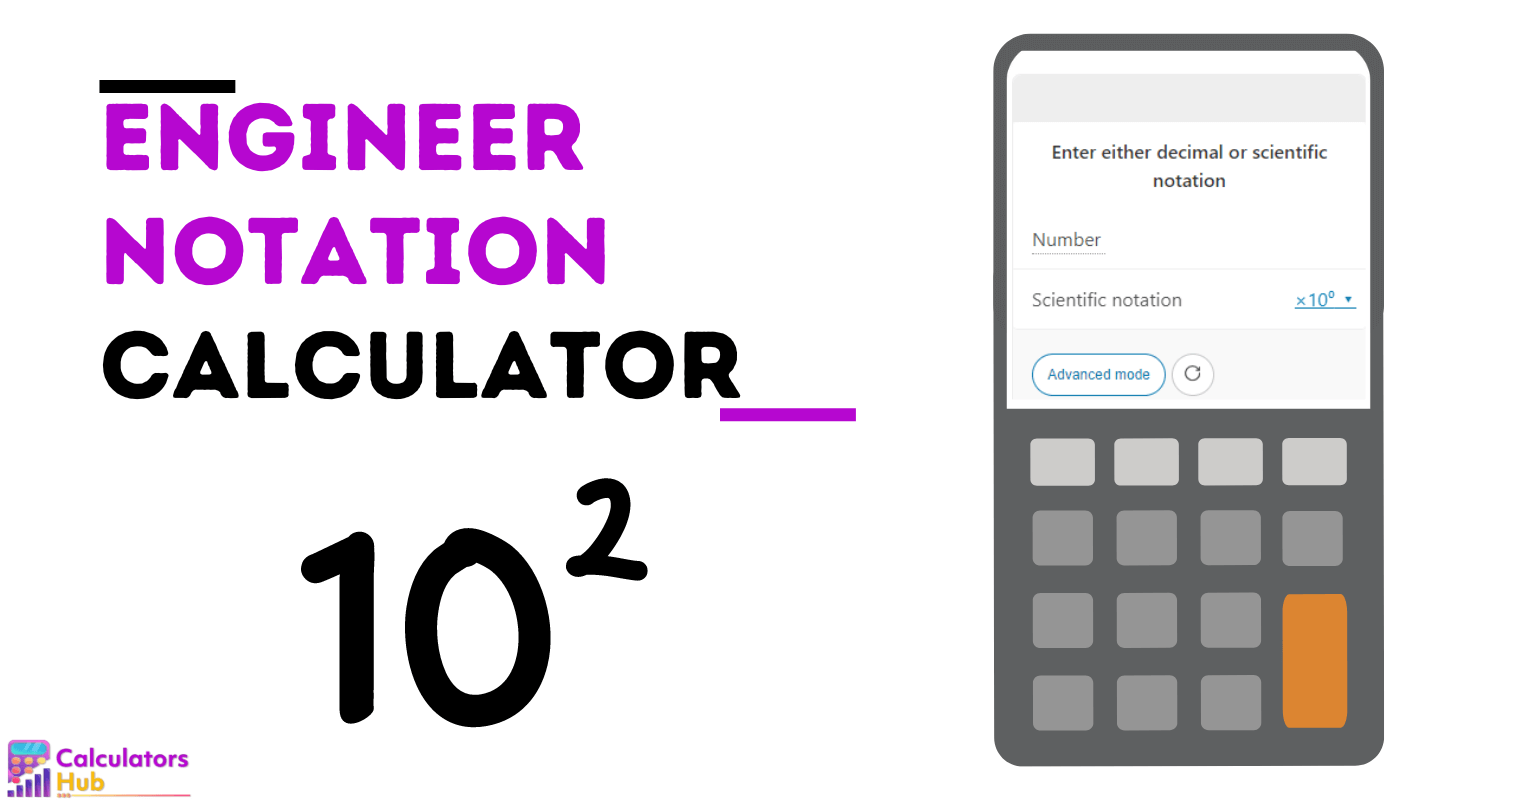 Calculadora de notação de engenheiro